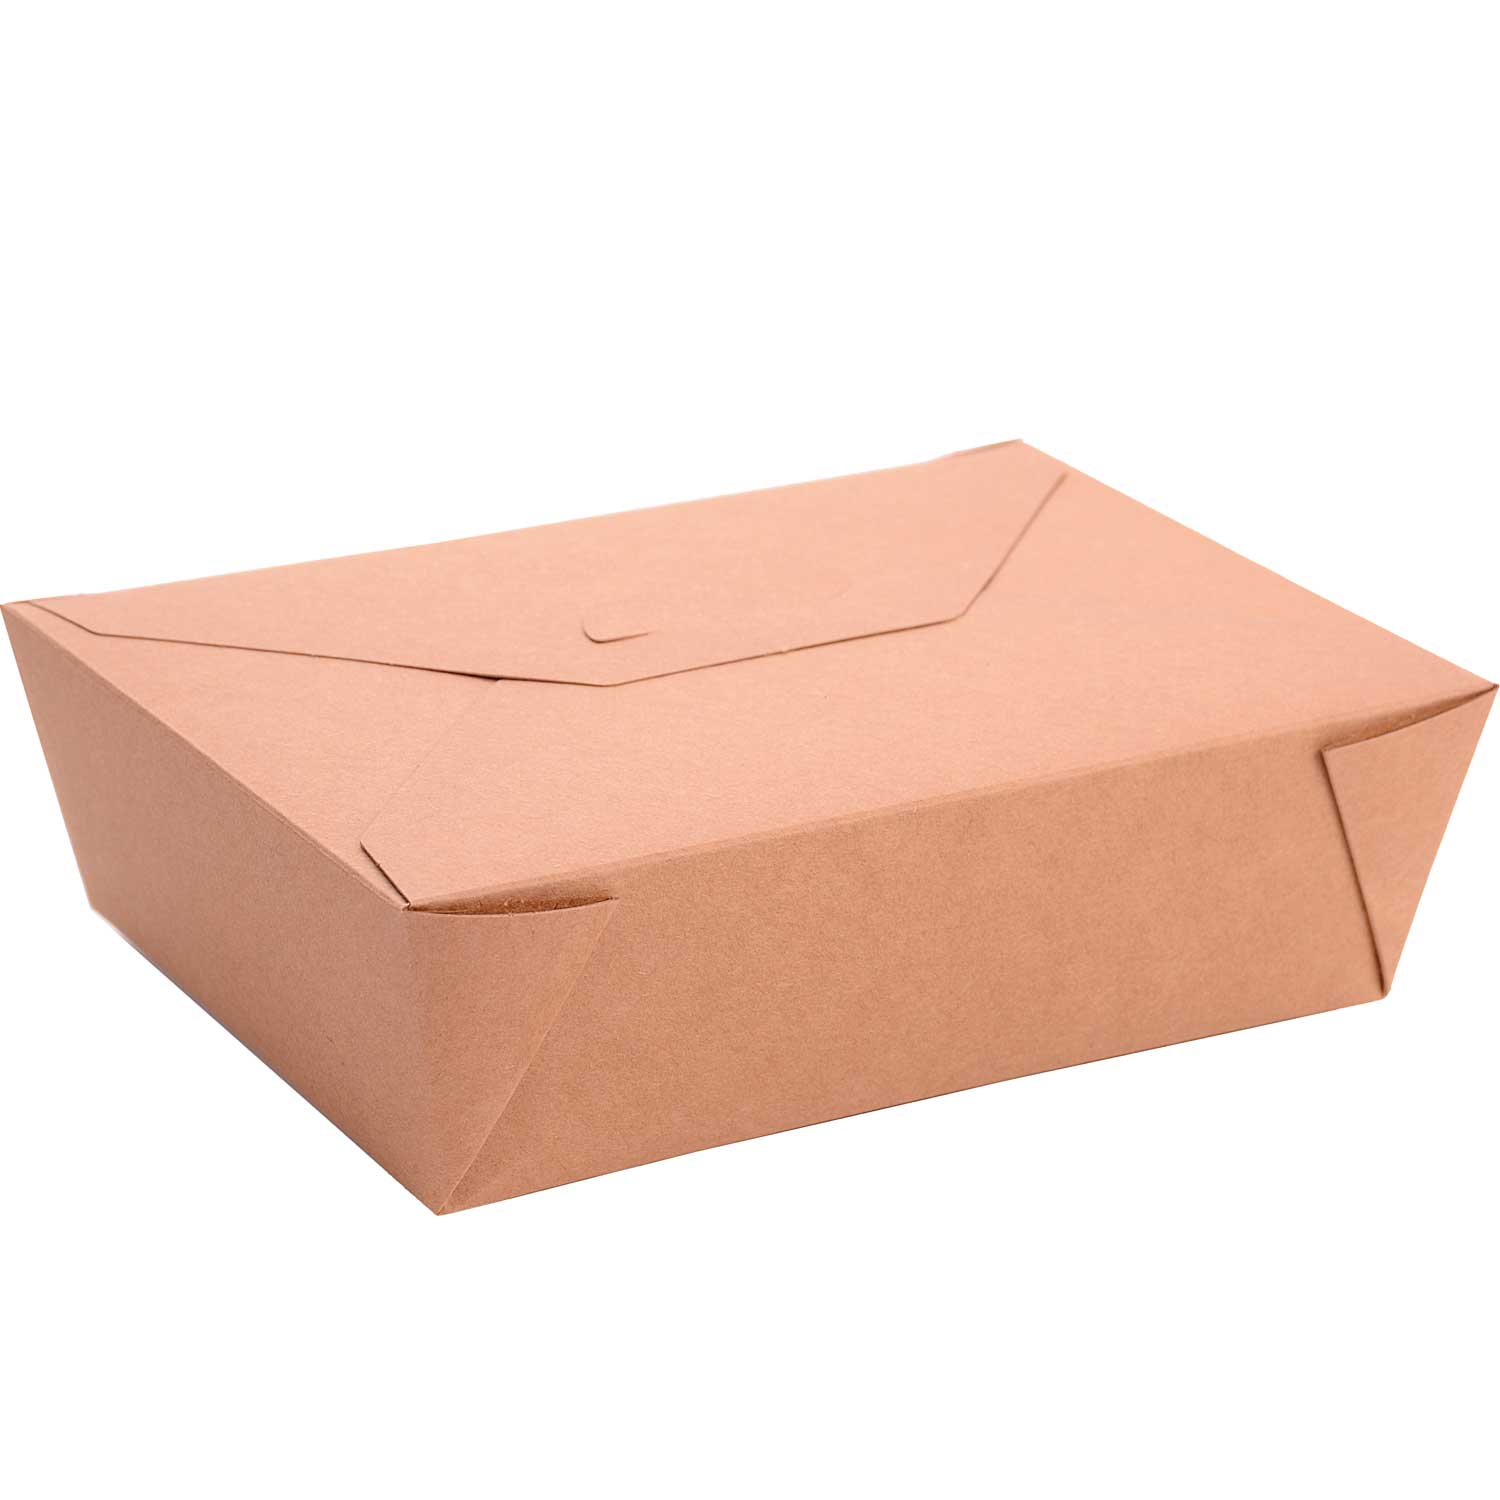 Foldable takeaway box. 28 oz (50)